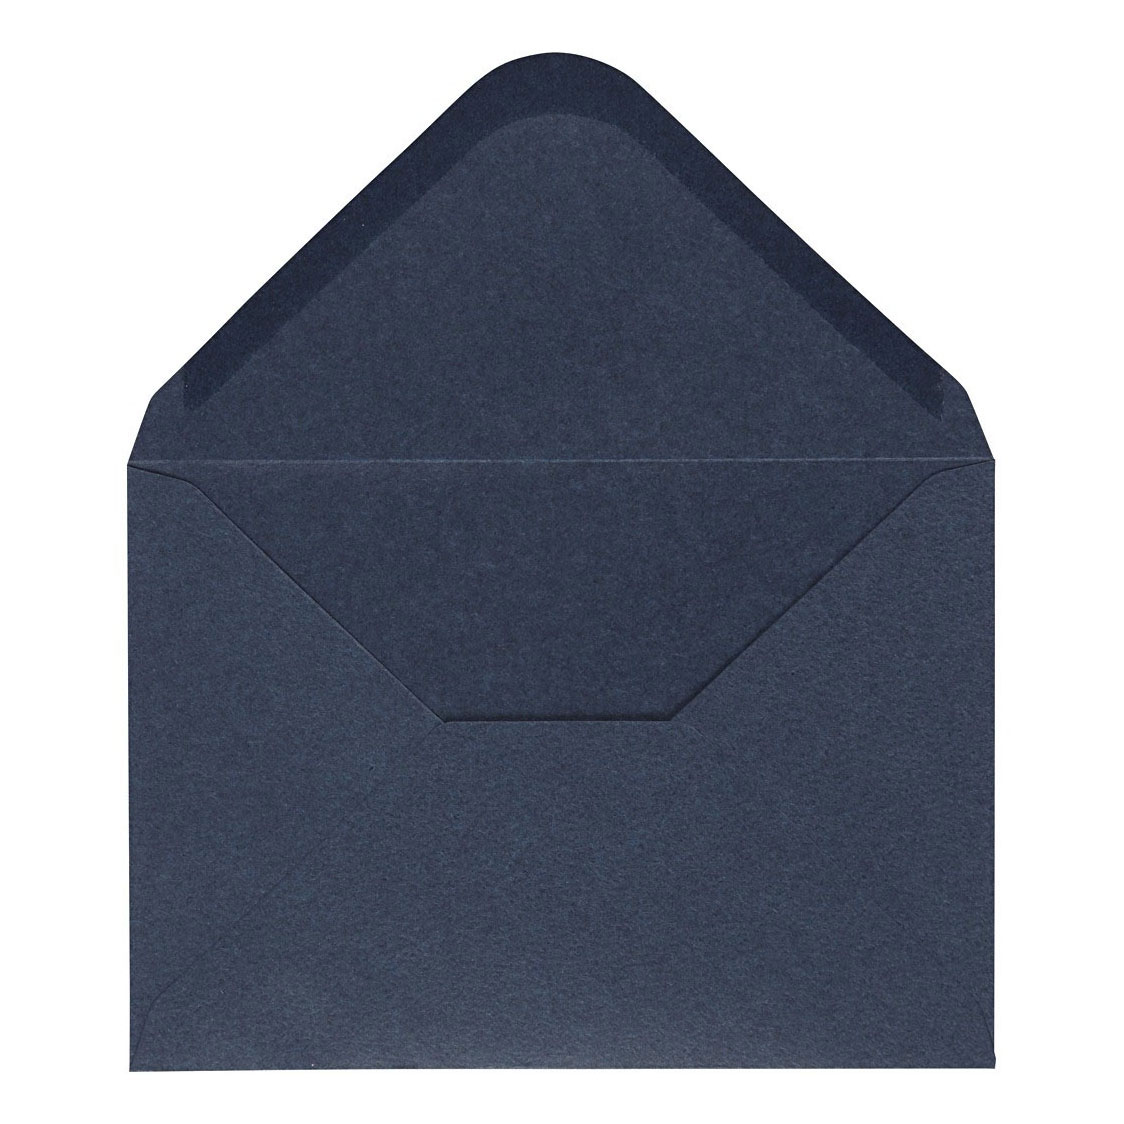 Umschlag Blau, 11,5x15cm, 10 Stk.